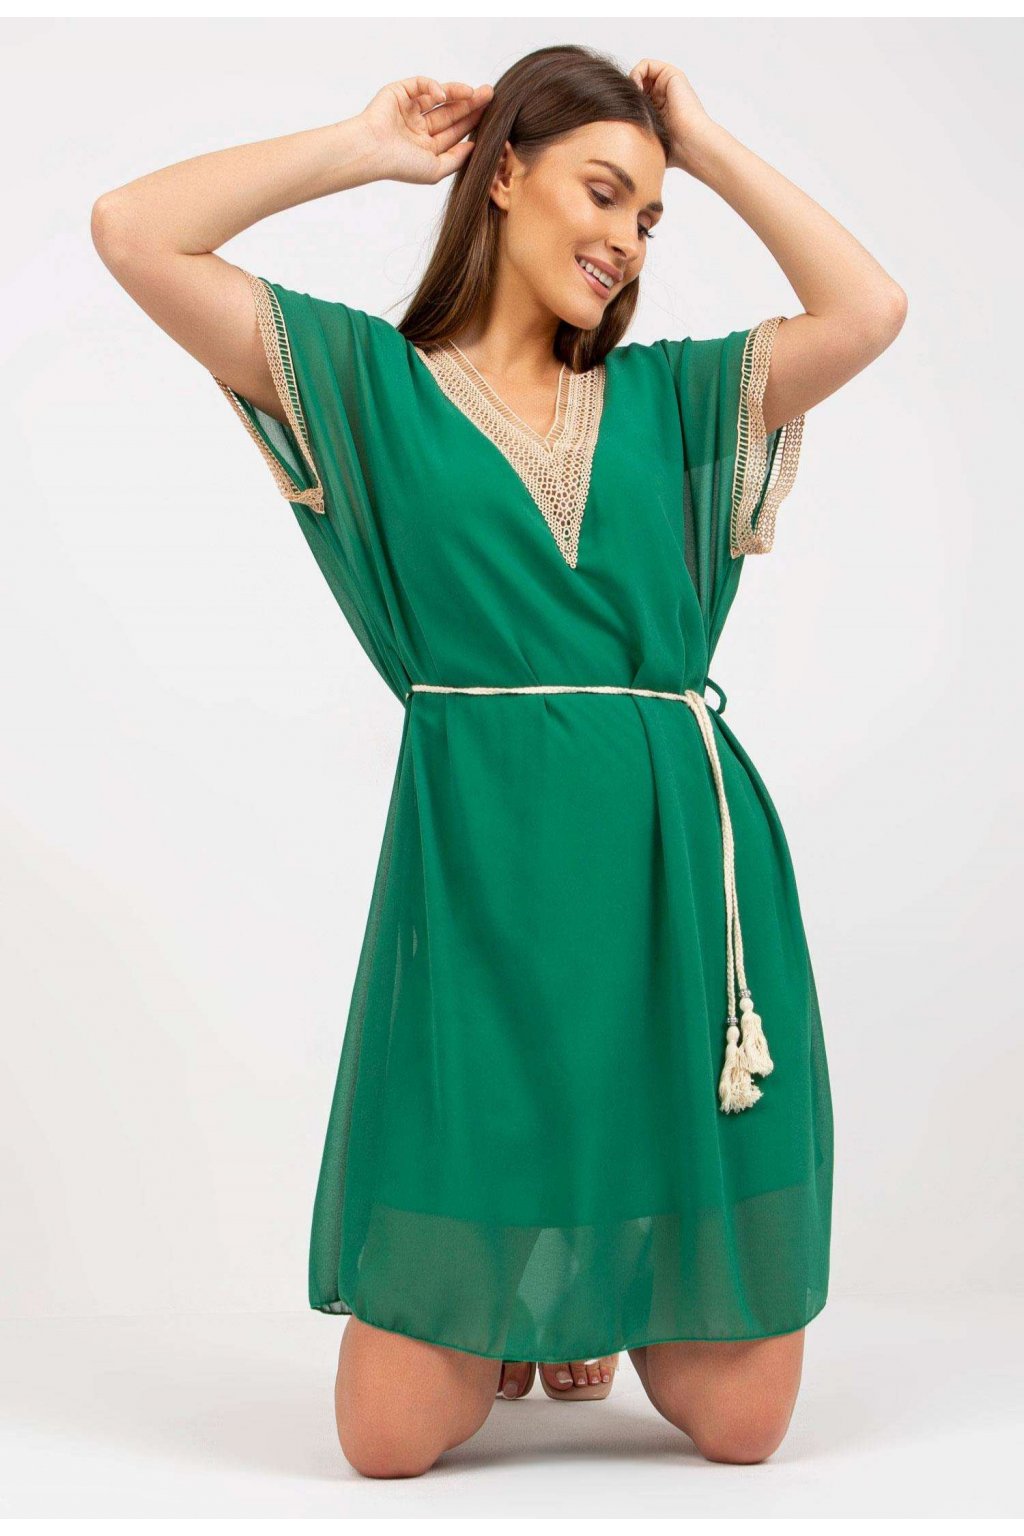 Zöld női ruha